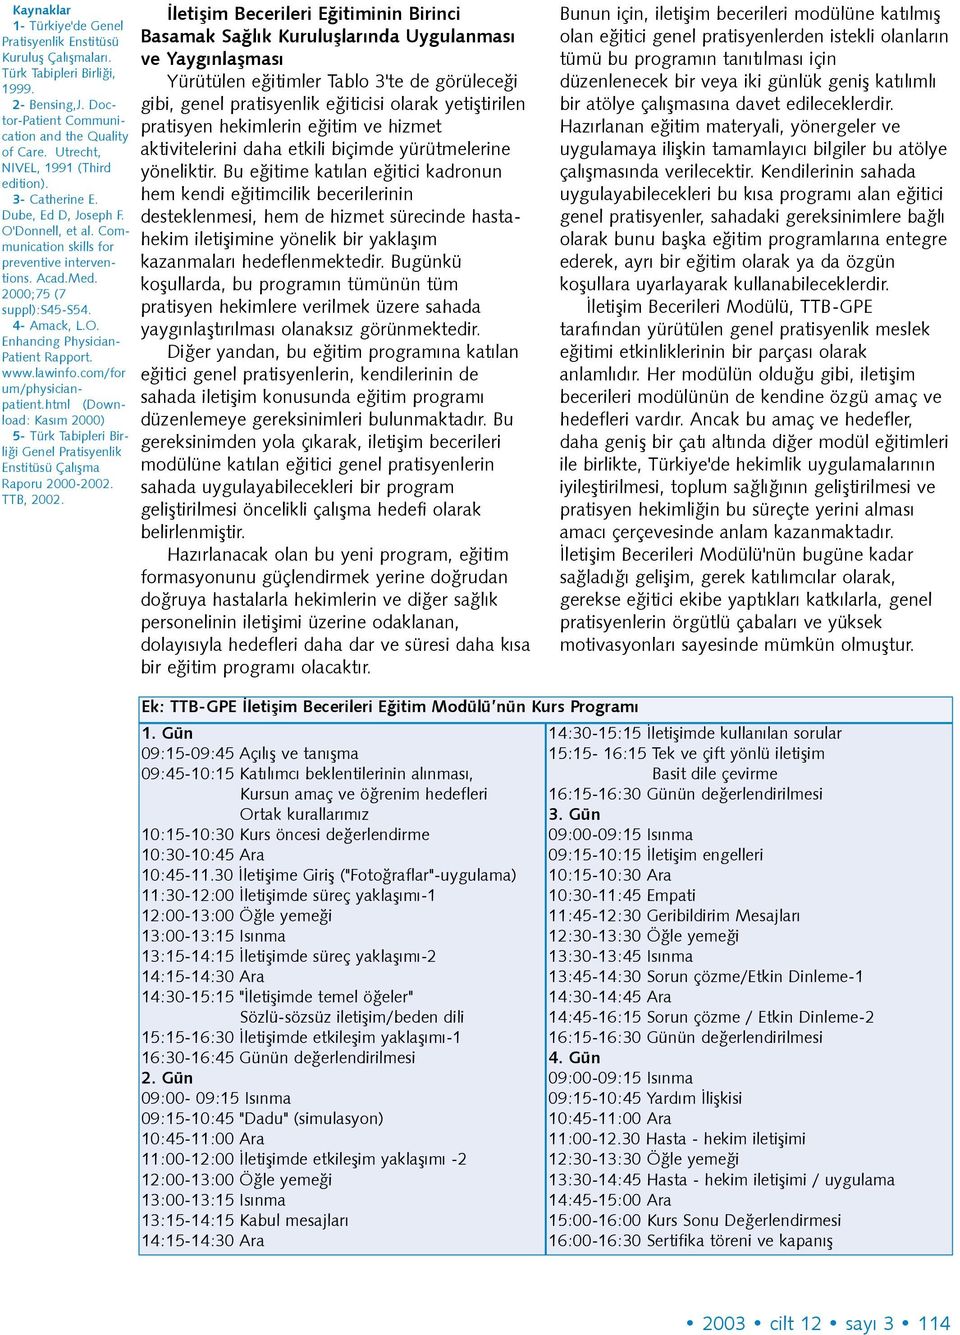 www.lawinfo.com/for um/physicianpatient.html (Download: Kasým 2000) 5- Türk Tabipleri Birliði Genel Pratisyenlik Enstitüsü Çalýþma Raporu 2000-2002. TTB, 2002.